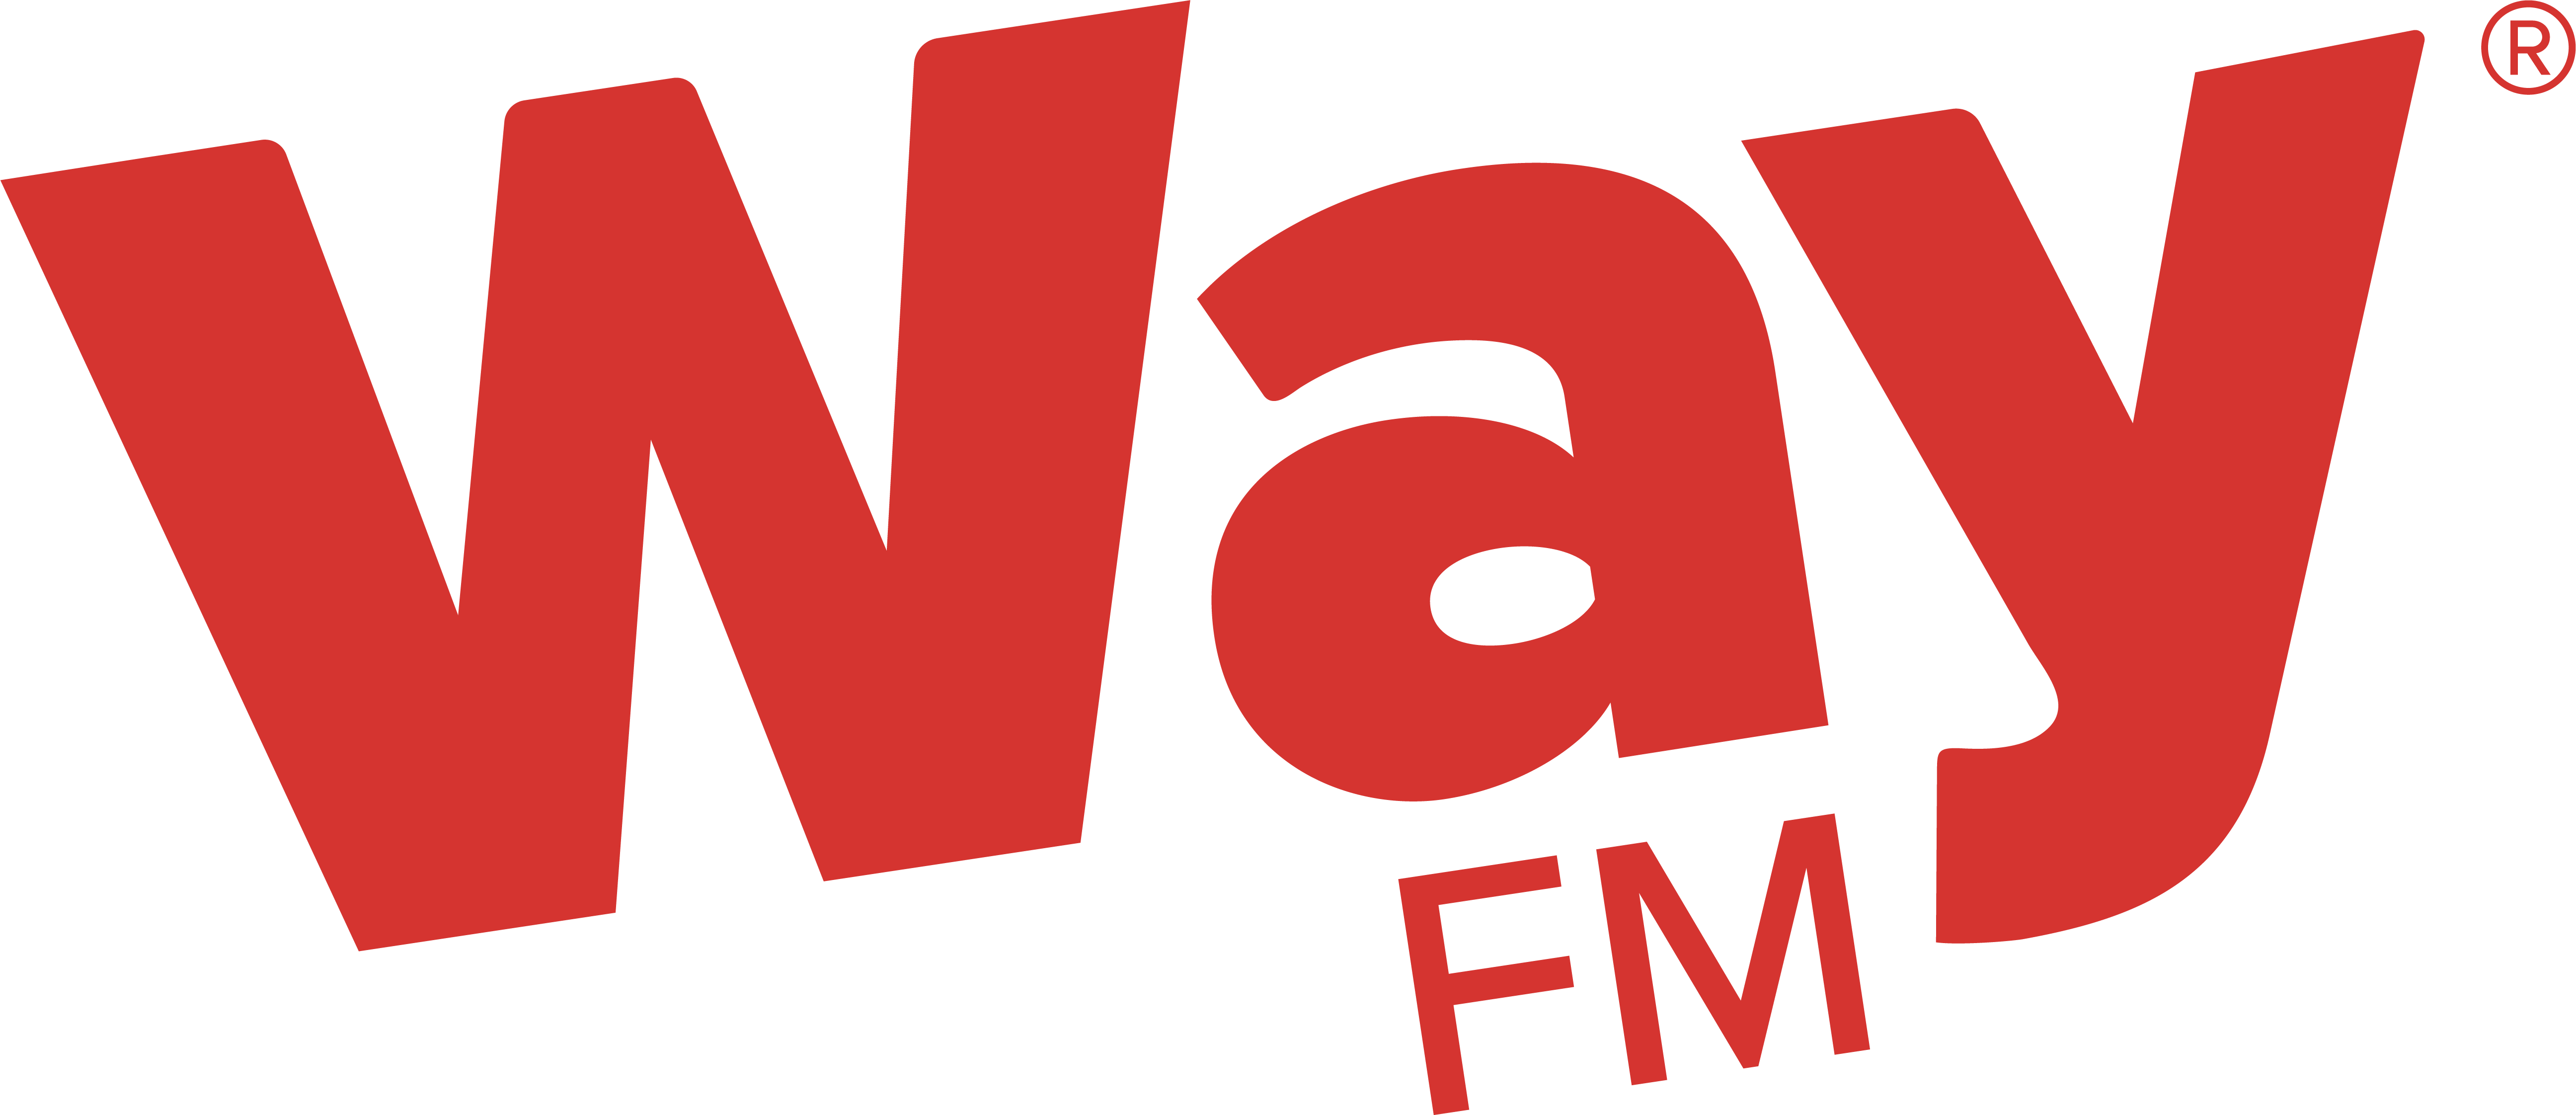 WayFM_Logo_Text_Red